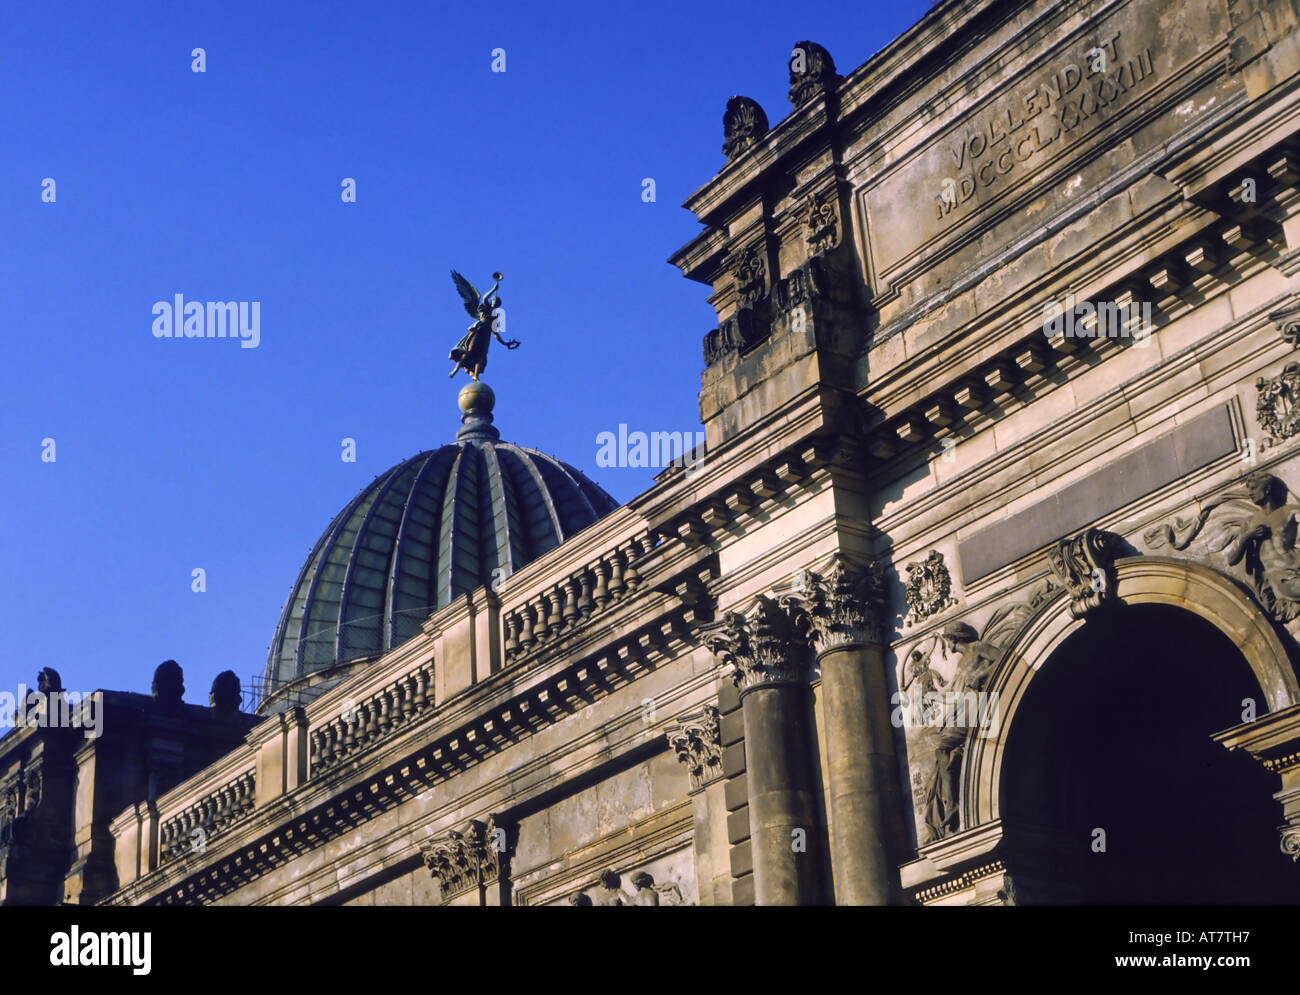 La entrada y la cúpula de la Academia de Bellas Artes, Bruehl Terraza, Dresden, Alemania Foto de stock